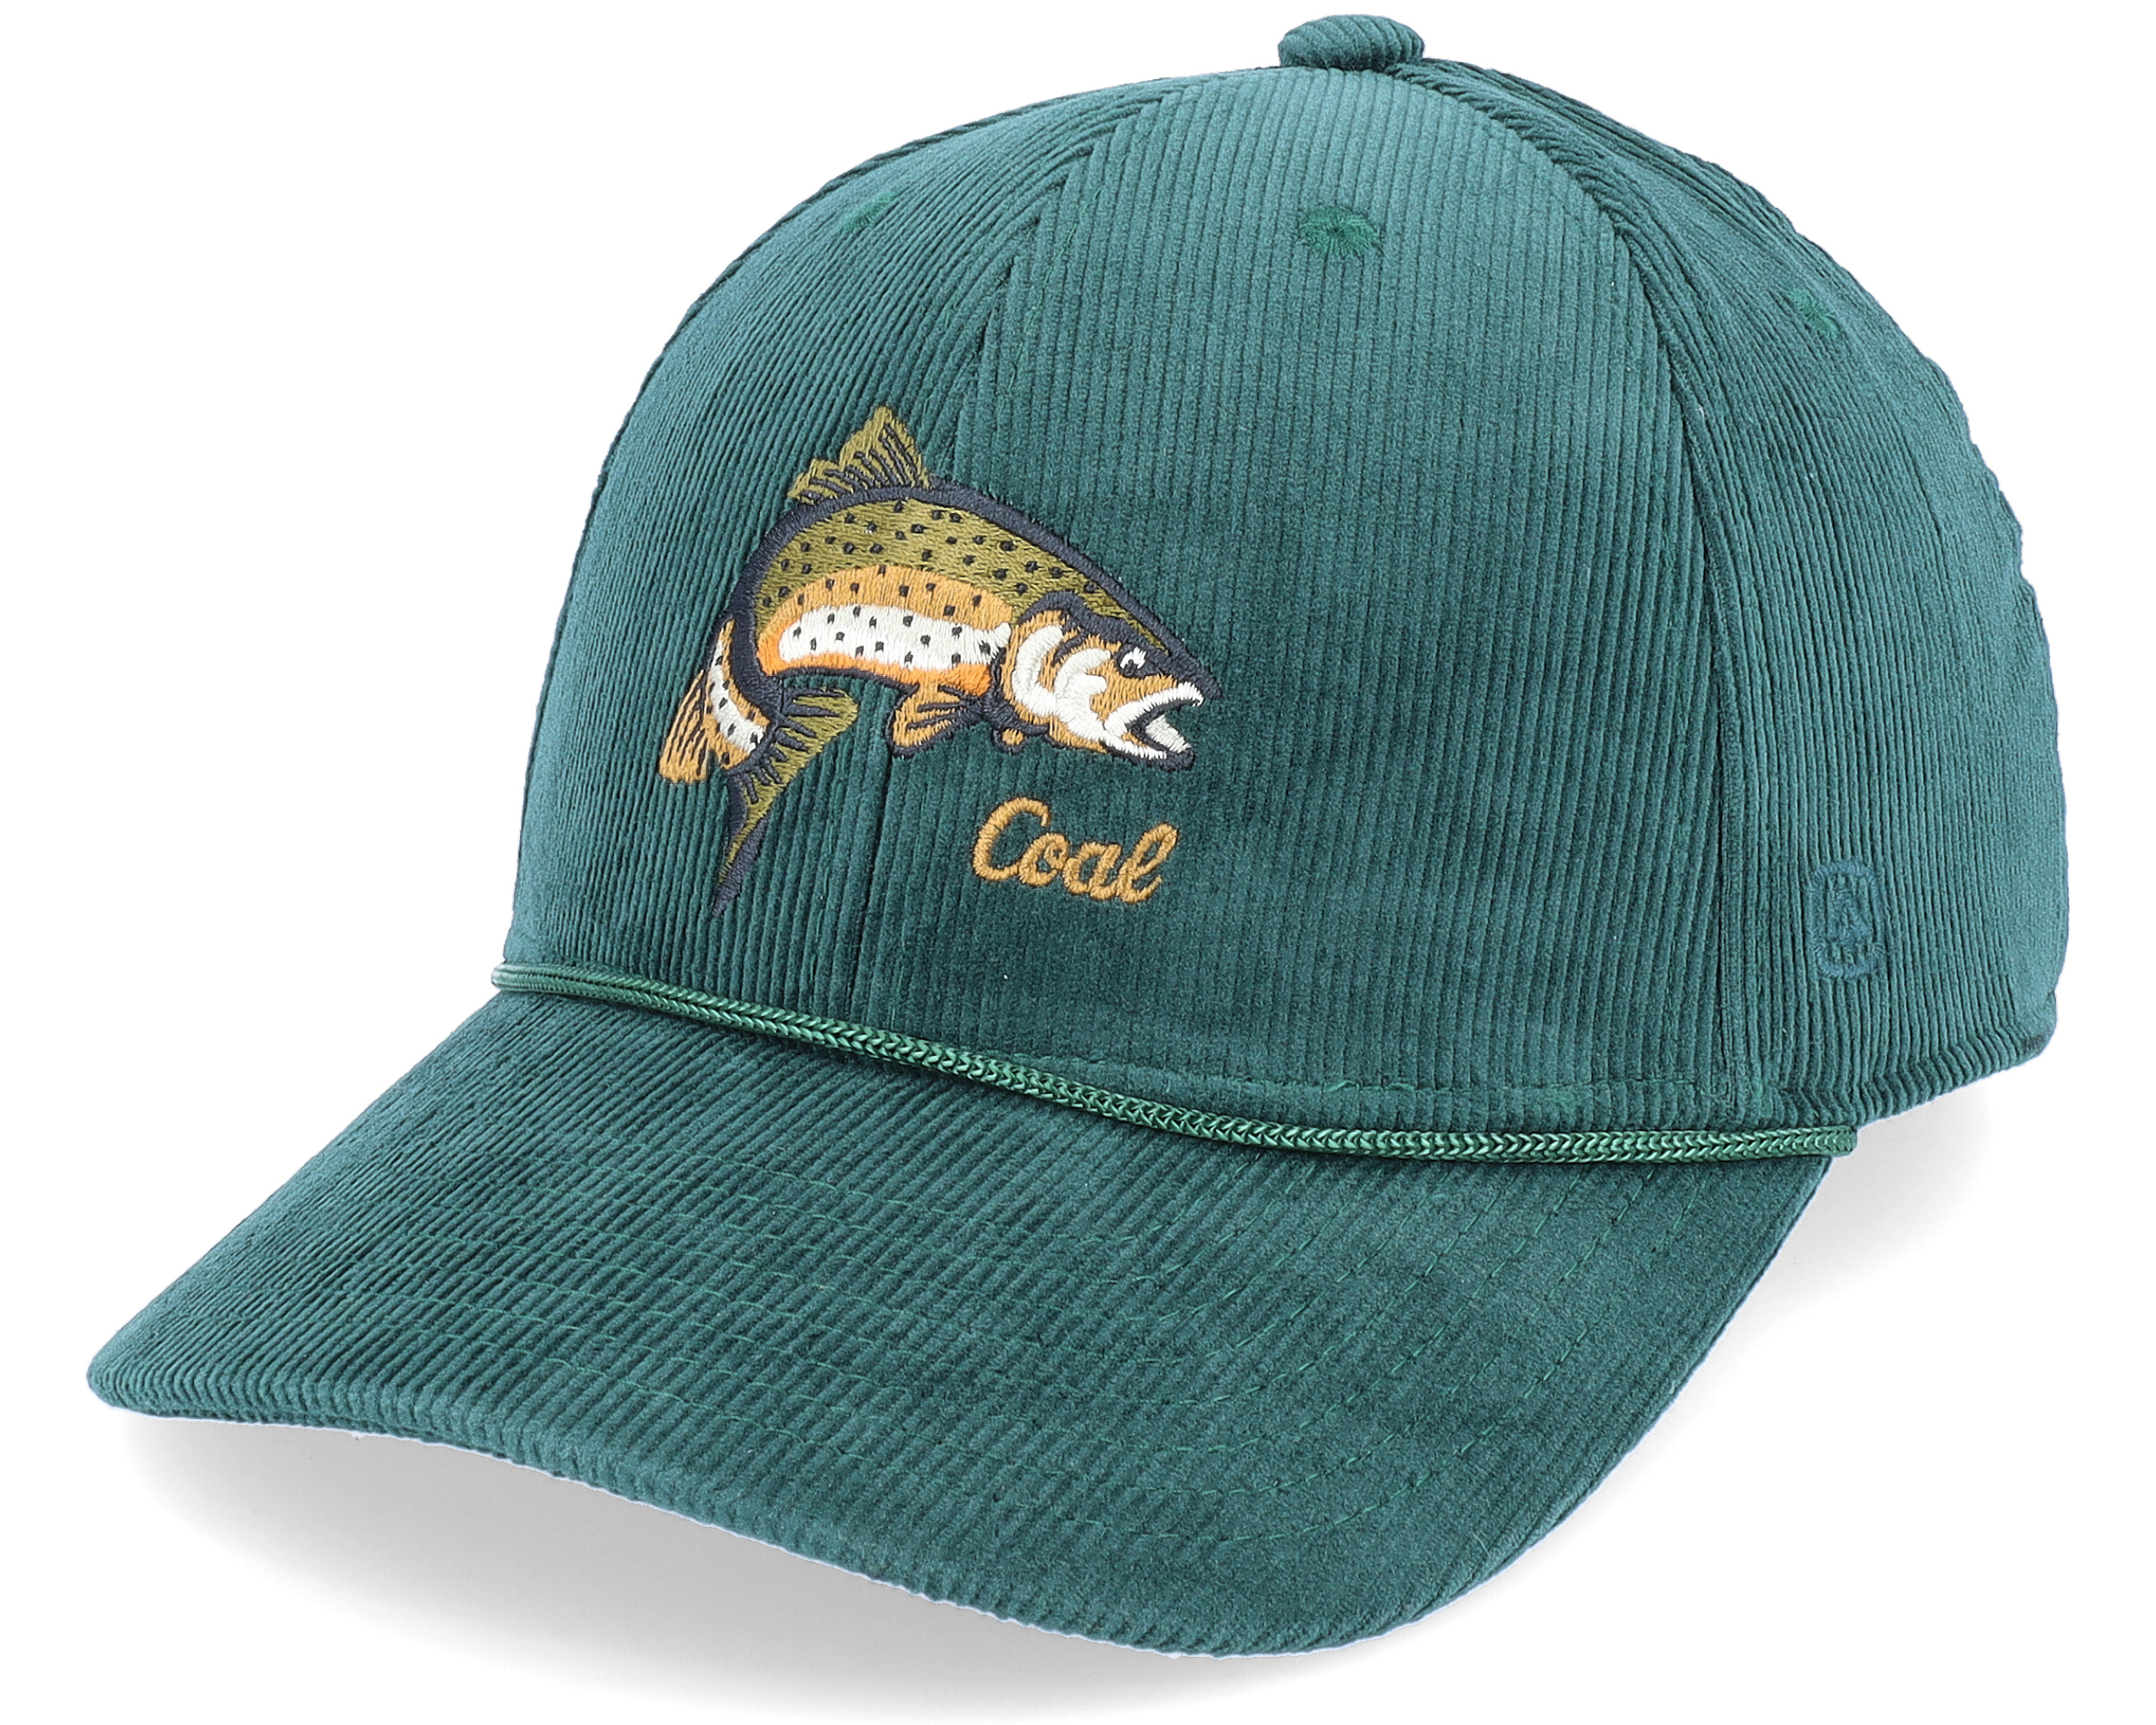 Wilderness Fish Low Dark Green Adjustable - Coal cap